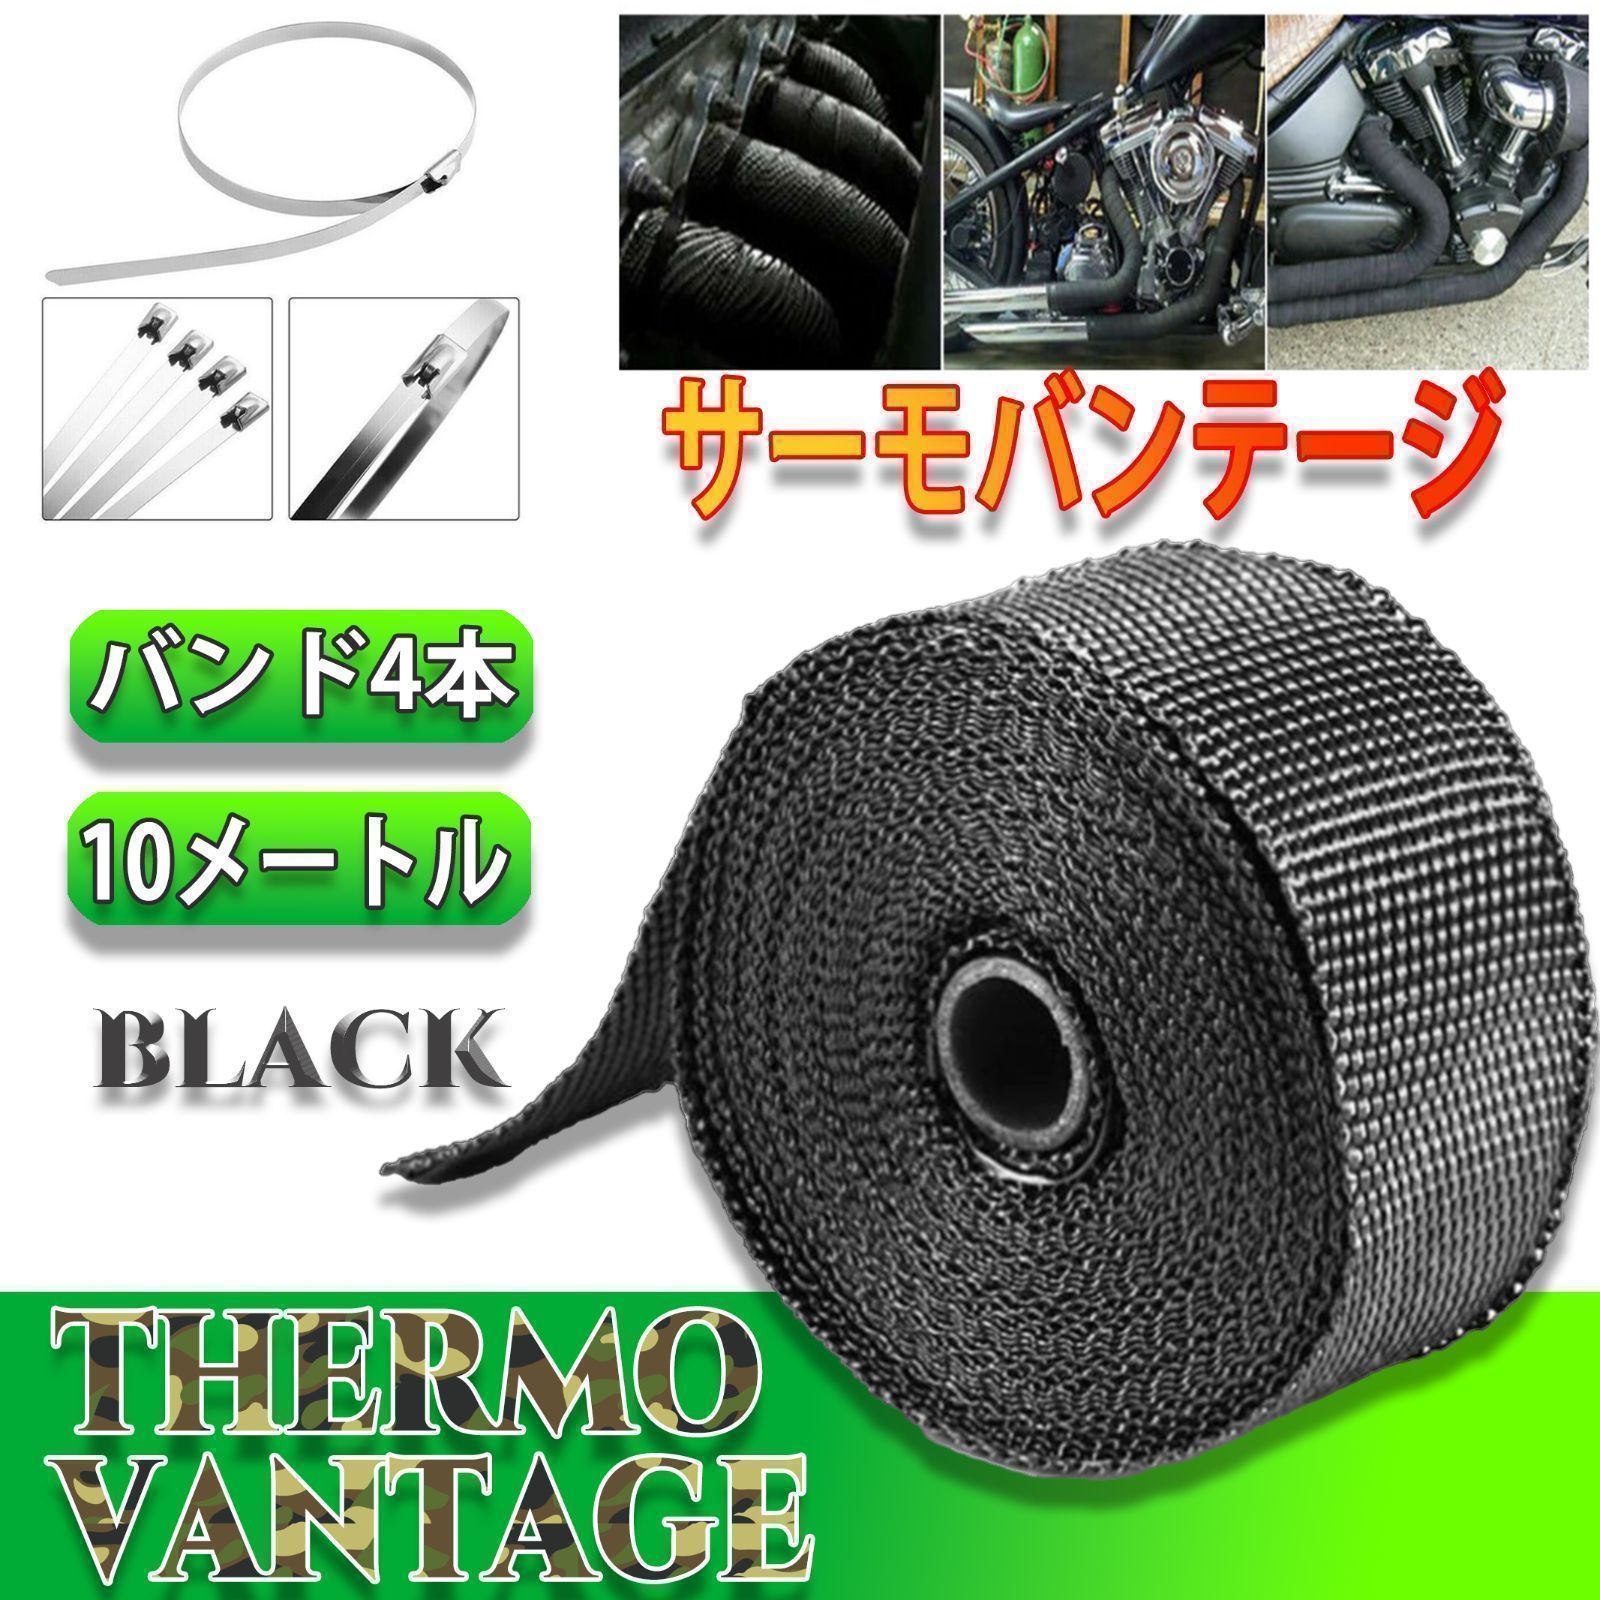 特価品コーナー☆ サーモバンテージ 5m マフラーバンド 遮熱 耐熱布 車 バイク 黒 ブラック